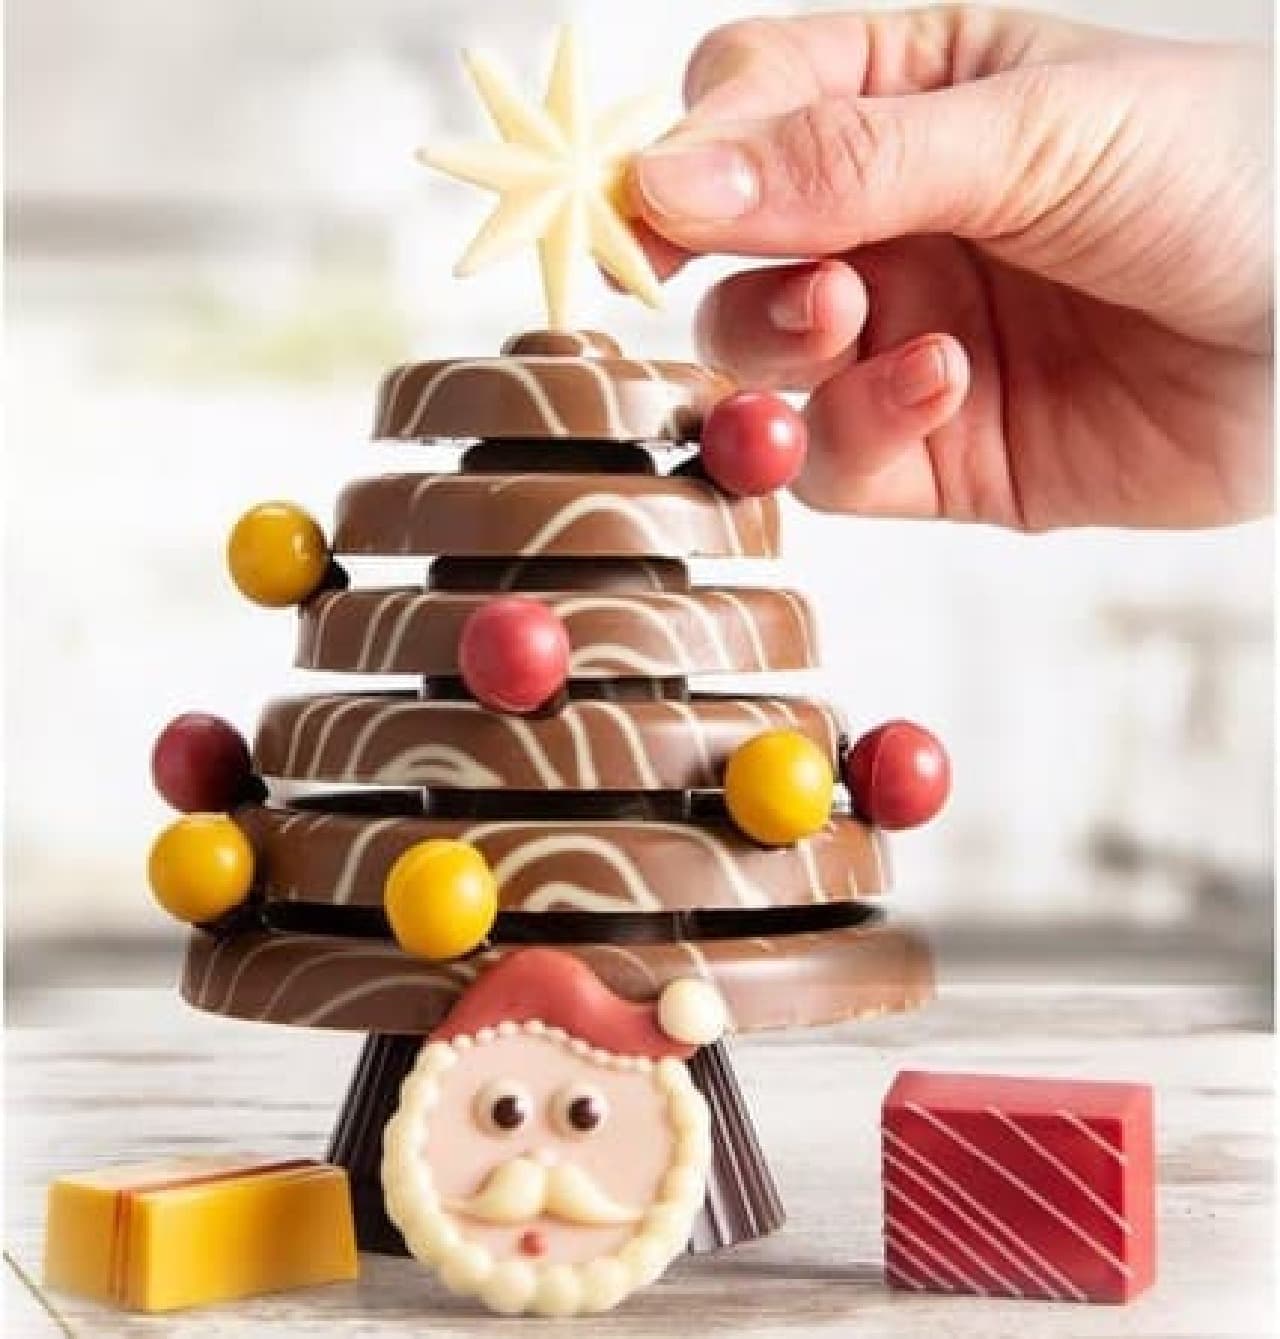 ツリー型バウムクーヘン・チョコレート細工のツリーなど -- ディノスのクリスマス特集サイト